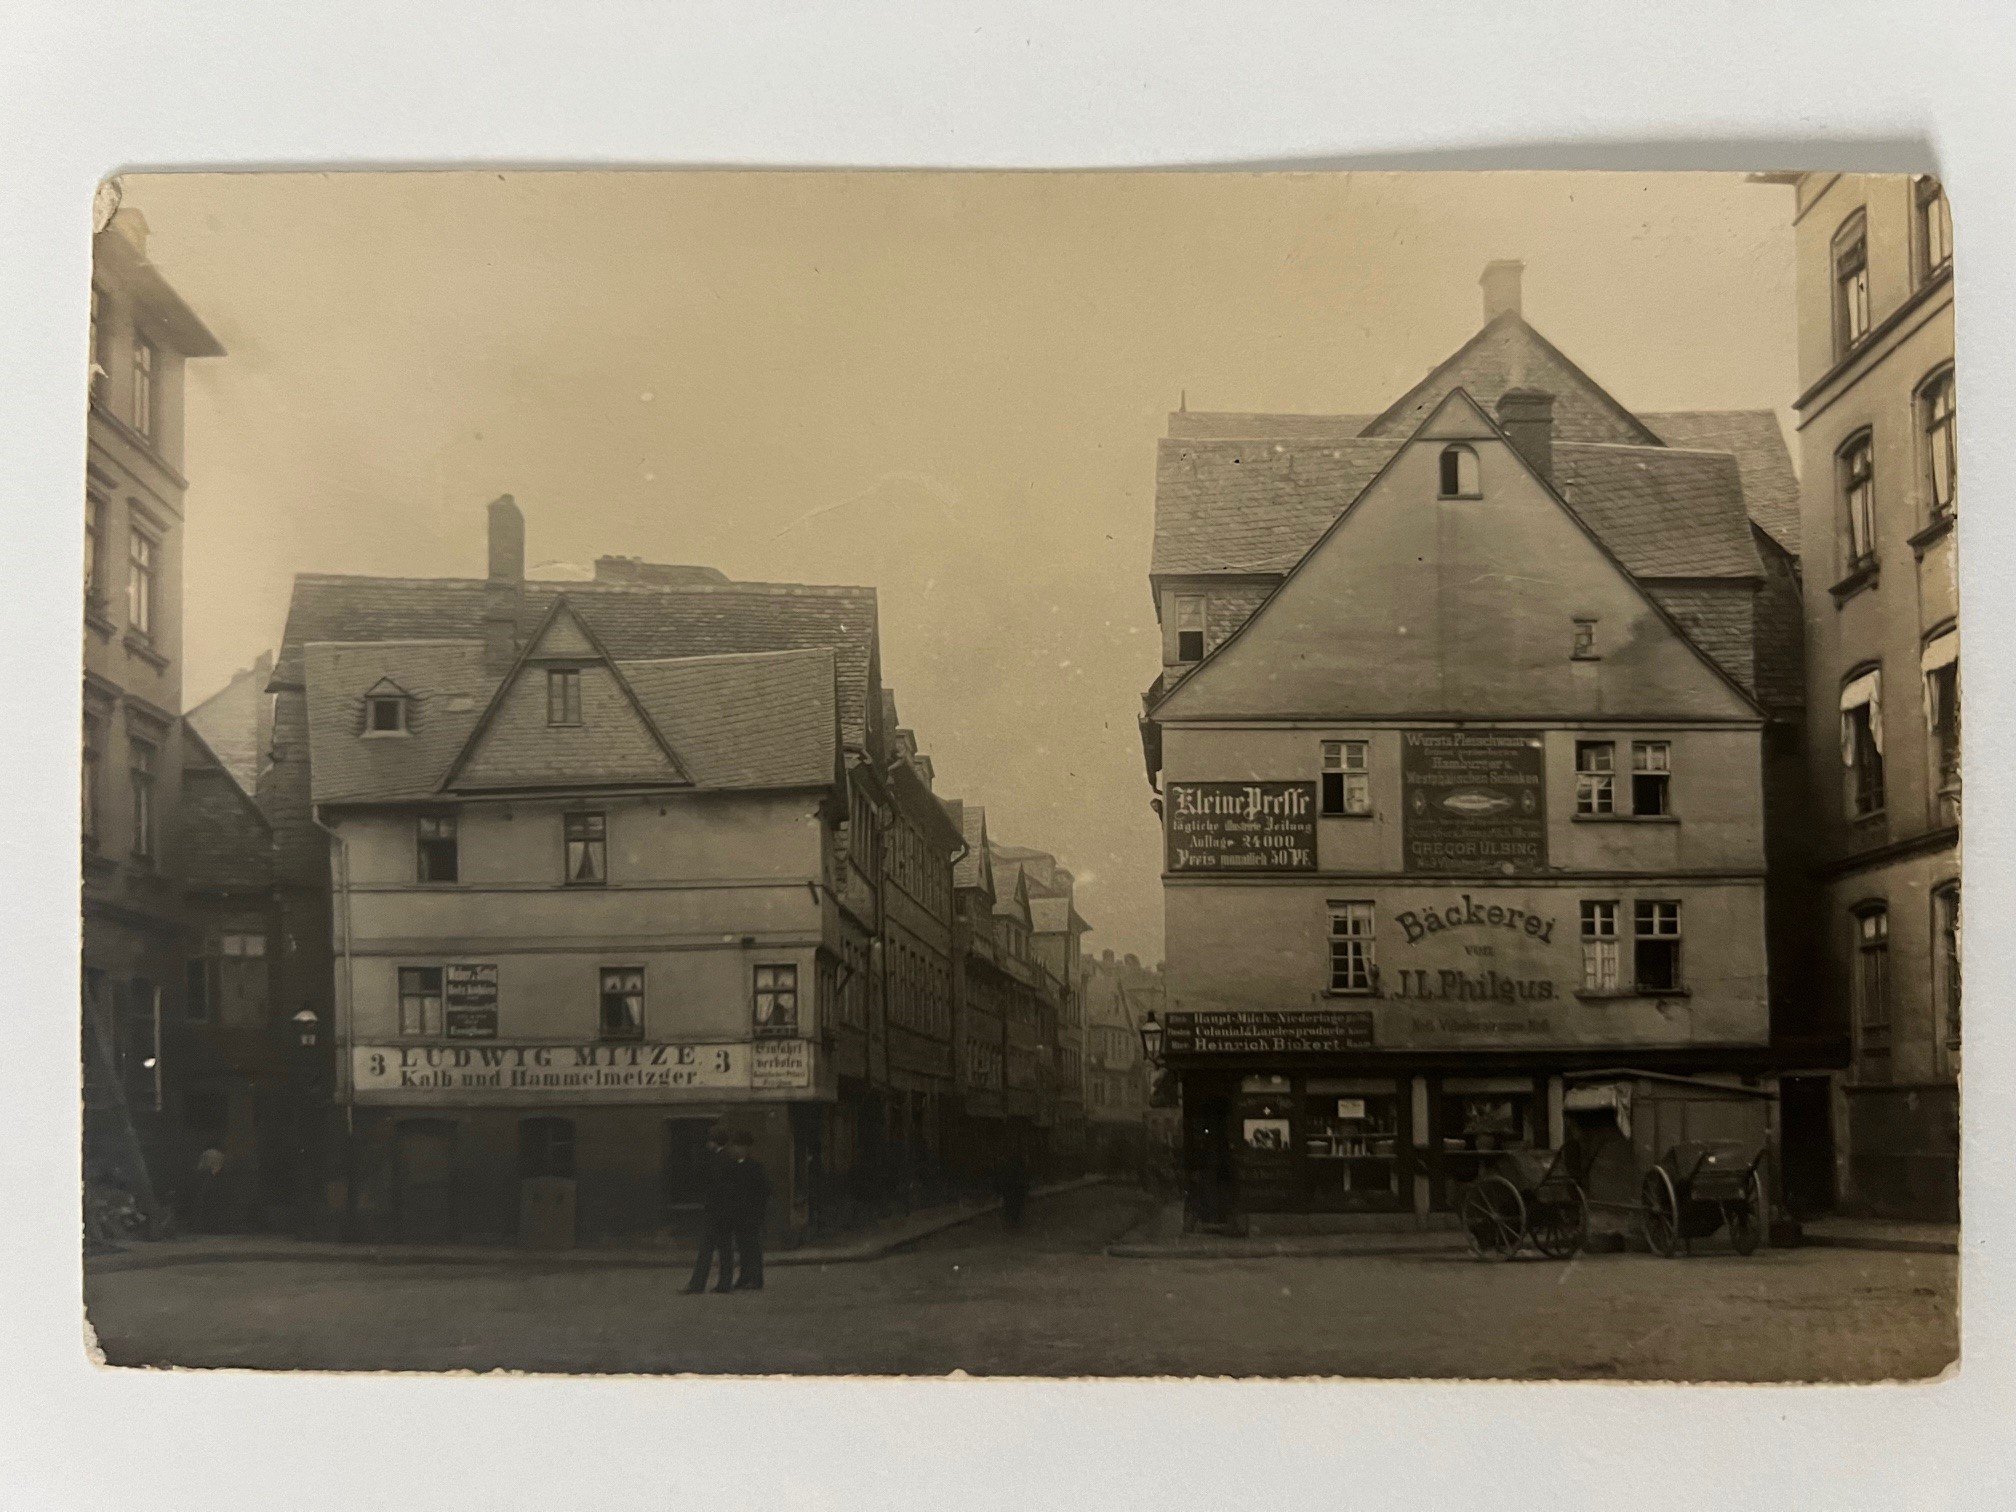 Unbekannter Fotograf, Frankfurt, Die Vilbelergasse von Osten, nach einer alten Platte von 1889, ca. 1905. (Taunus-Rhein-Main - Regionalgeschichtliche Sammlung Dr. Stefan Naas CC BY-NC-SA)